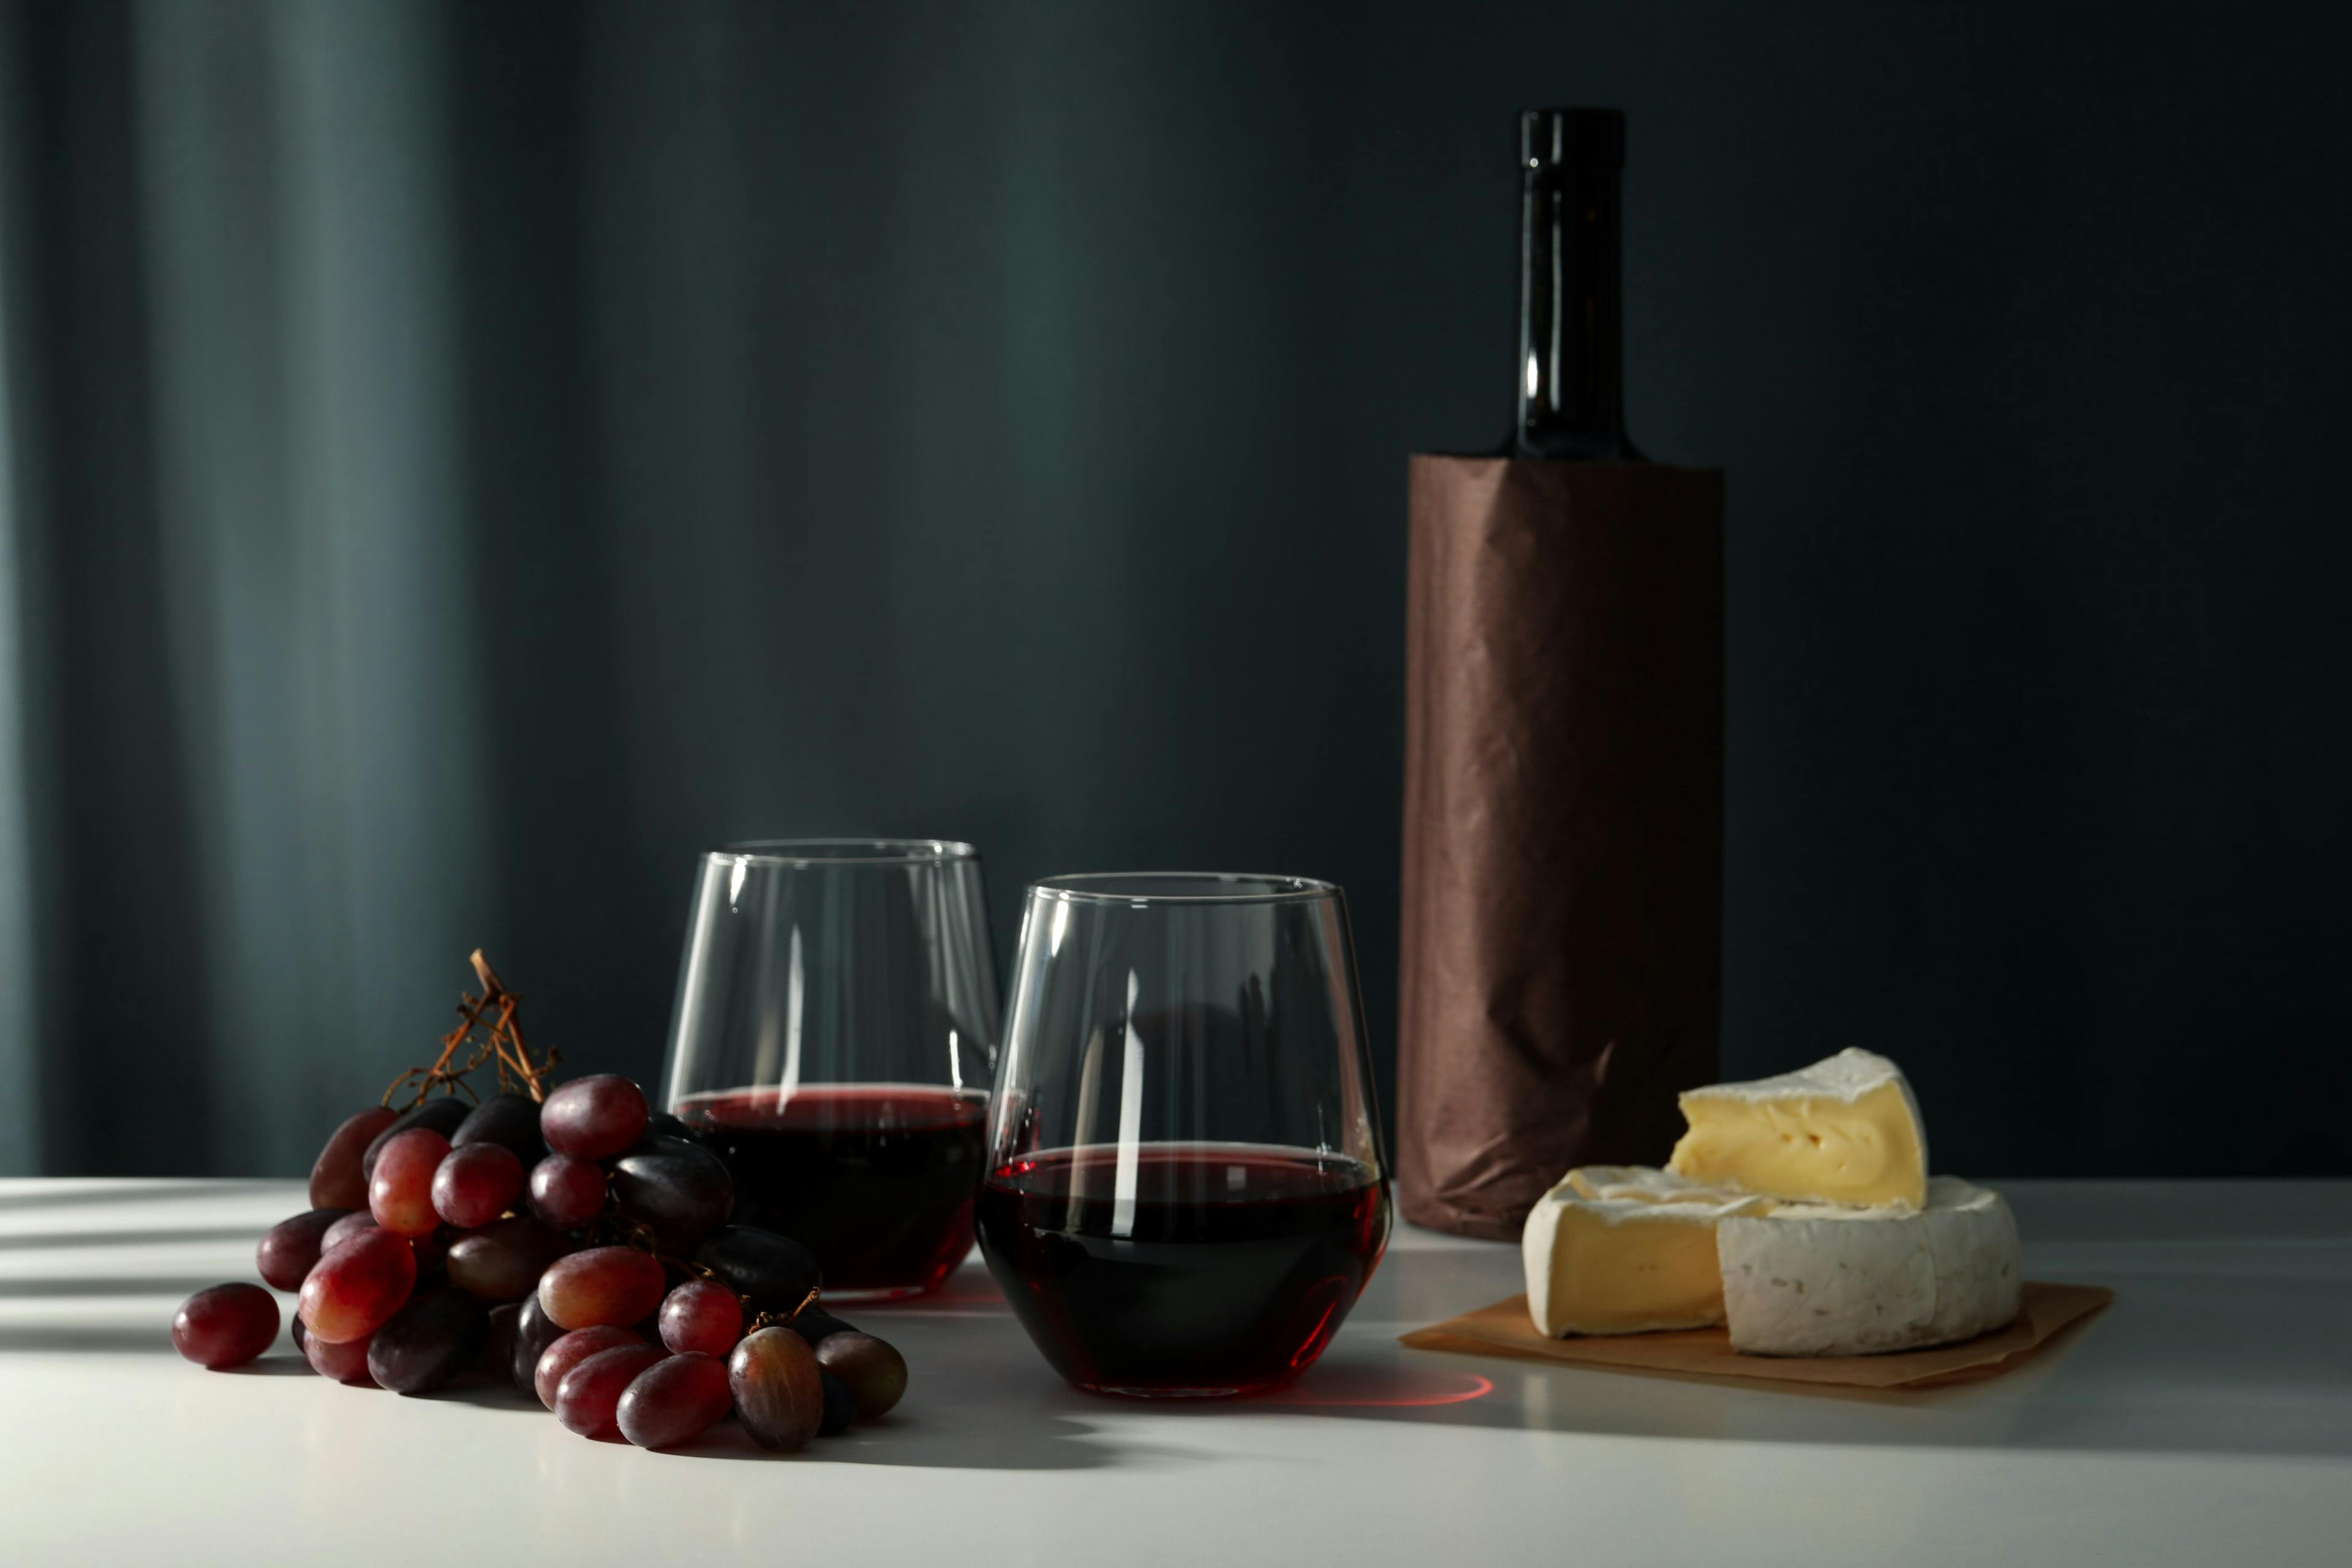 Vinflaska, glas med rött vin, druvor och en bit ost på ett bord mot en mörk bakgrund.